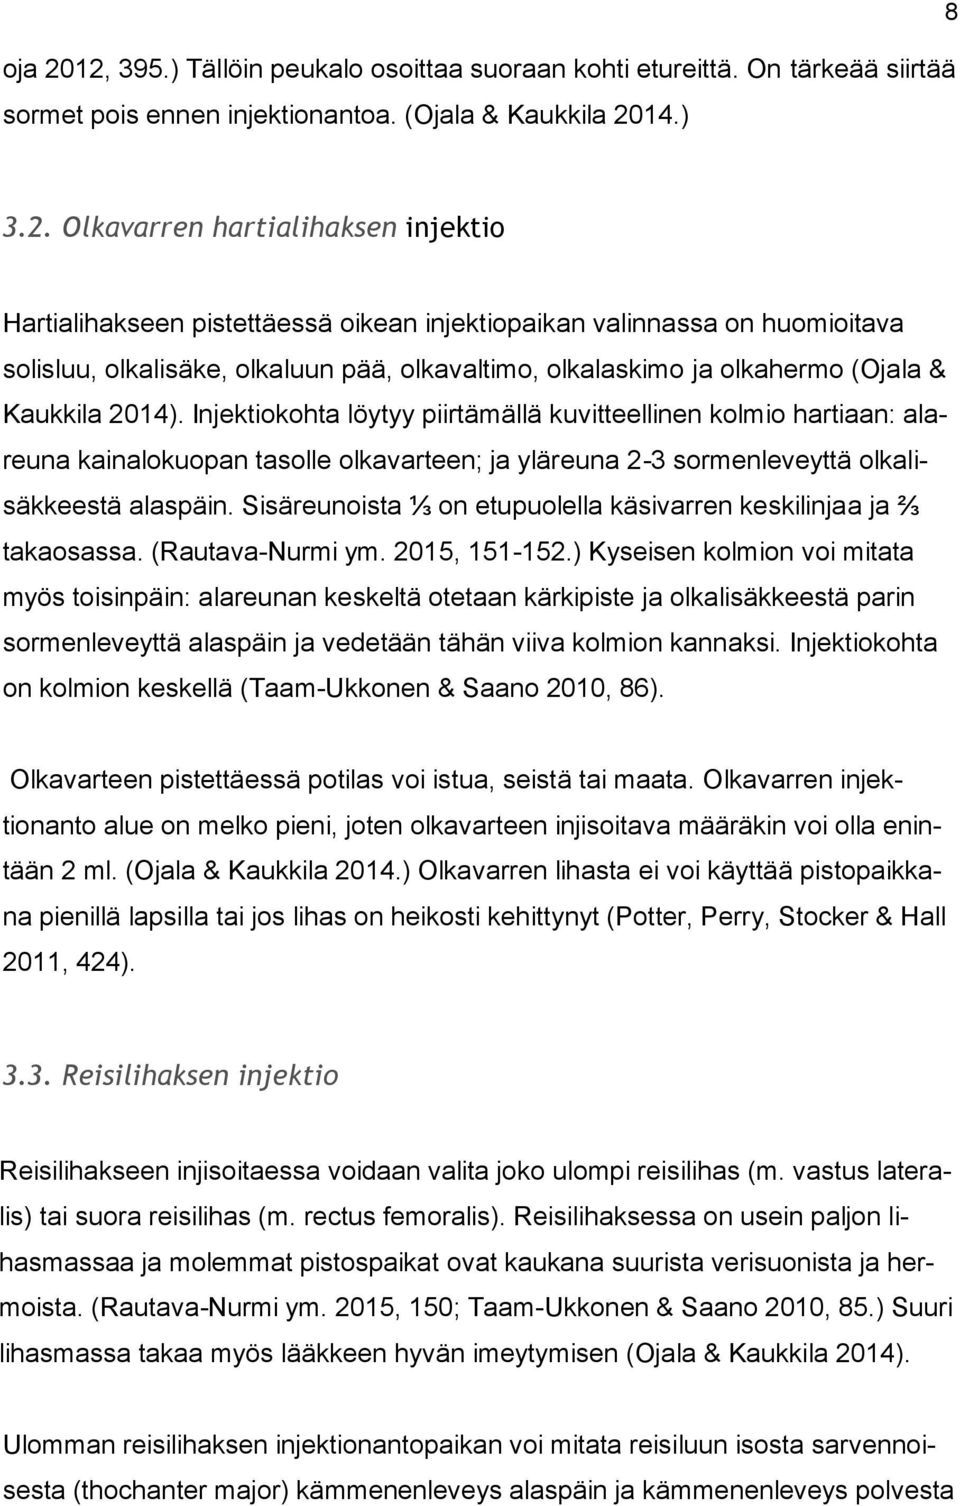 pistettäessä oikean injektiopaikan valinnassa on huomioitava solisluu, olkalisäke, olkaluun pää, olkavaltimo, olkalaskimo ja olkahermo (Ojala & Kaukkila 2014).